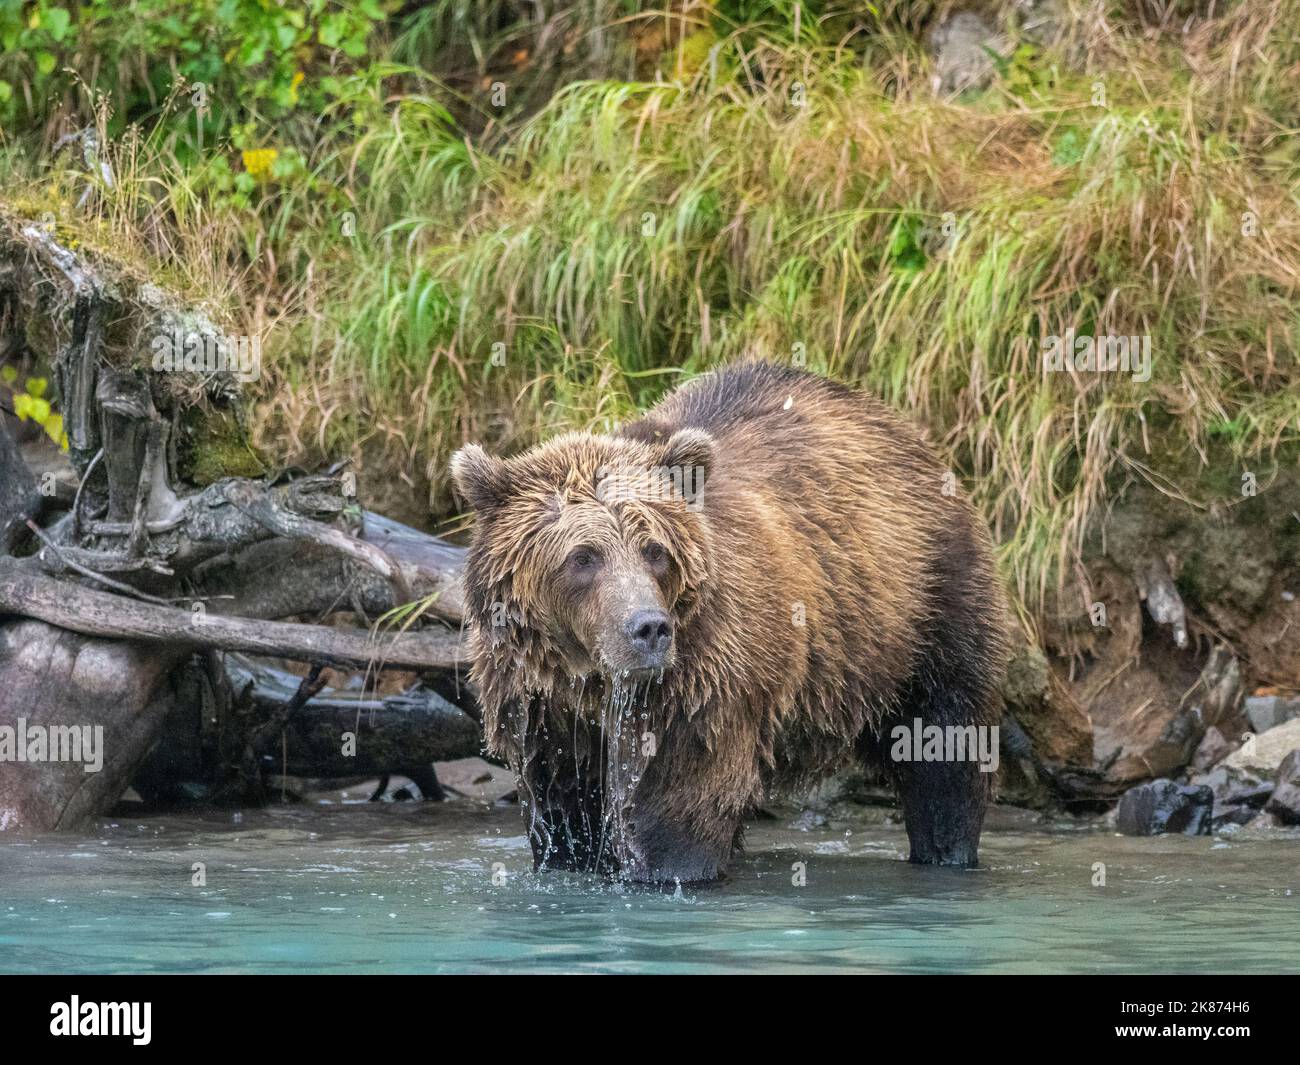 Un jeune ours brun (Ursus arctos) le long du rivage du parc national et de la réserve du lac Clark, Alaska, États-Unis d'Amérique, Amérique du Nord Banque D'Images